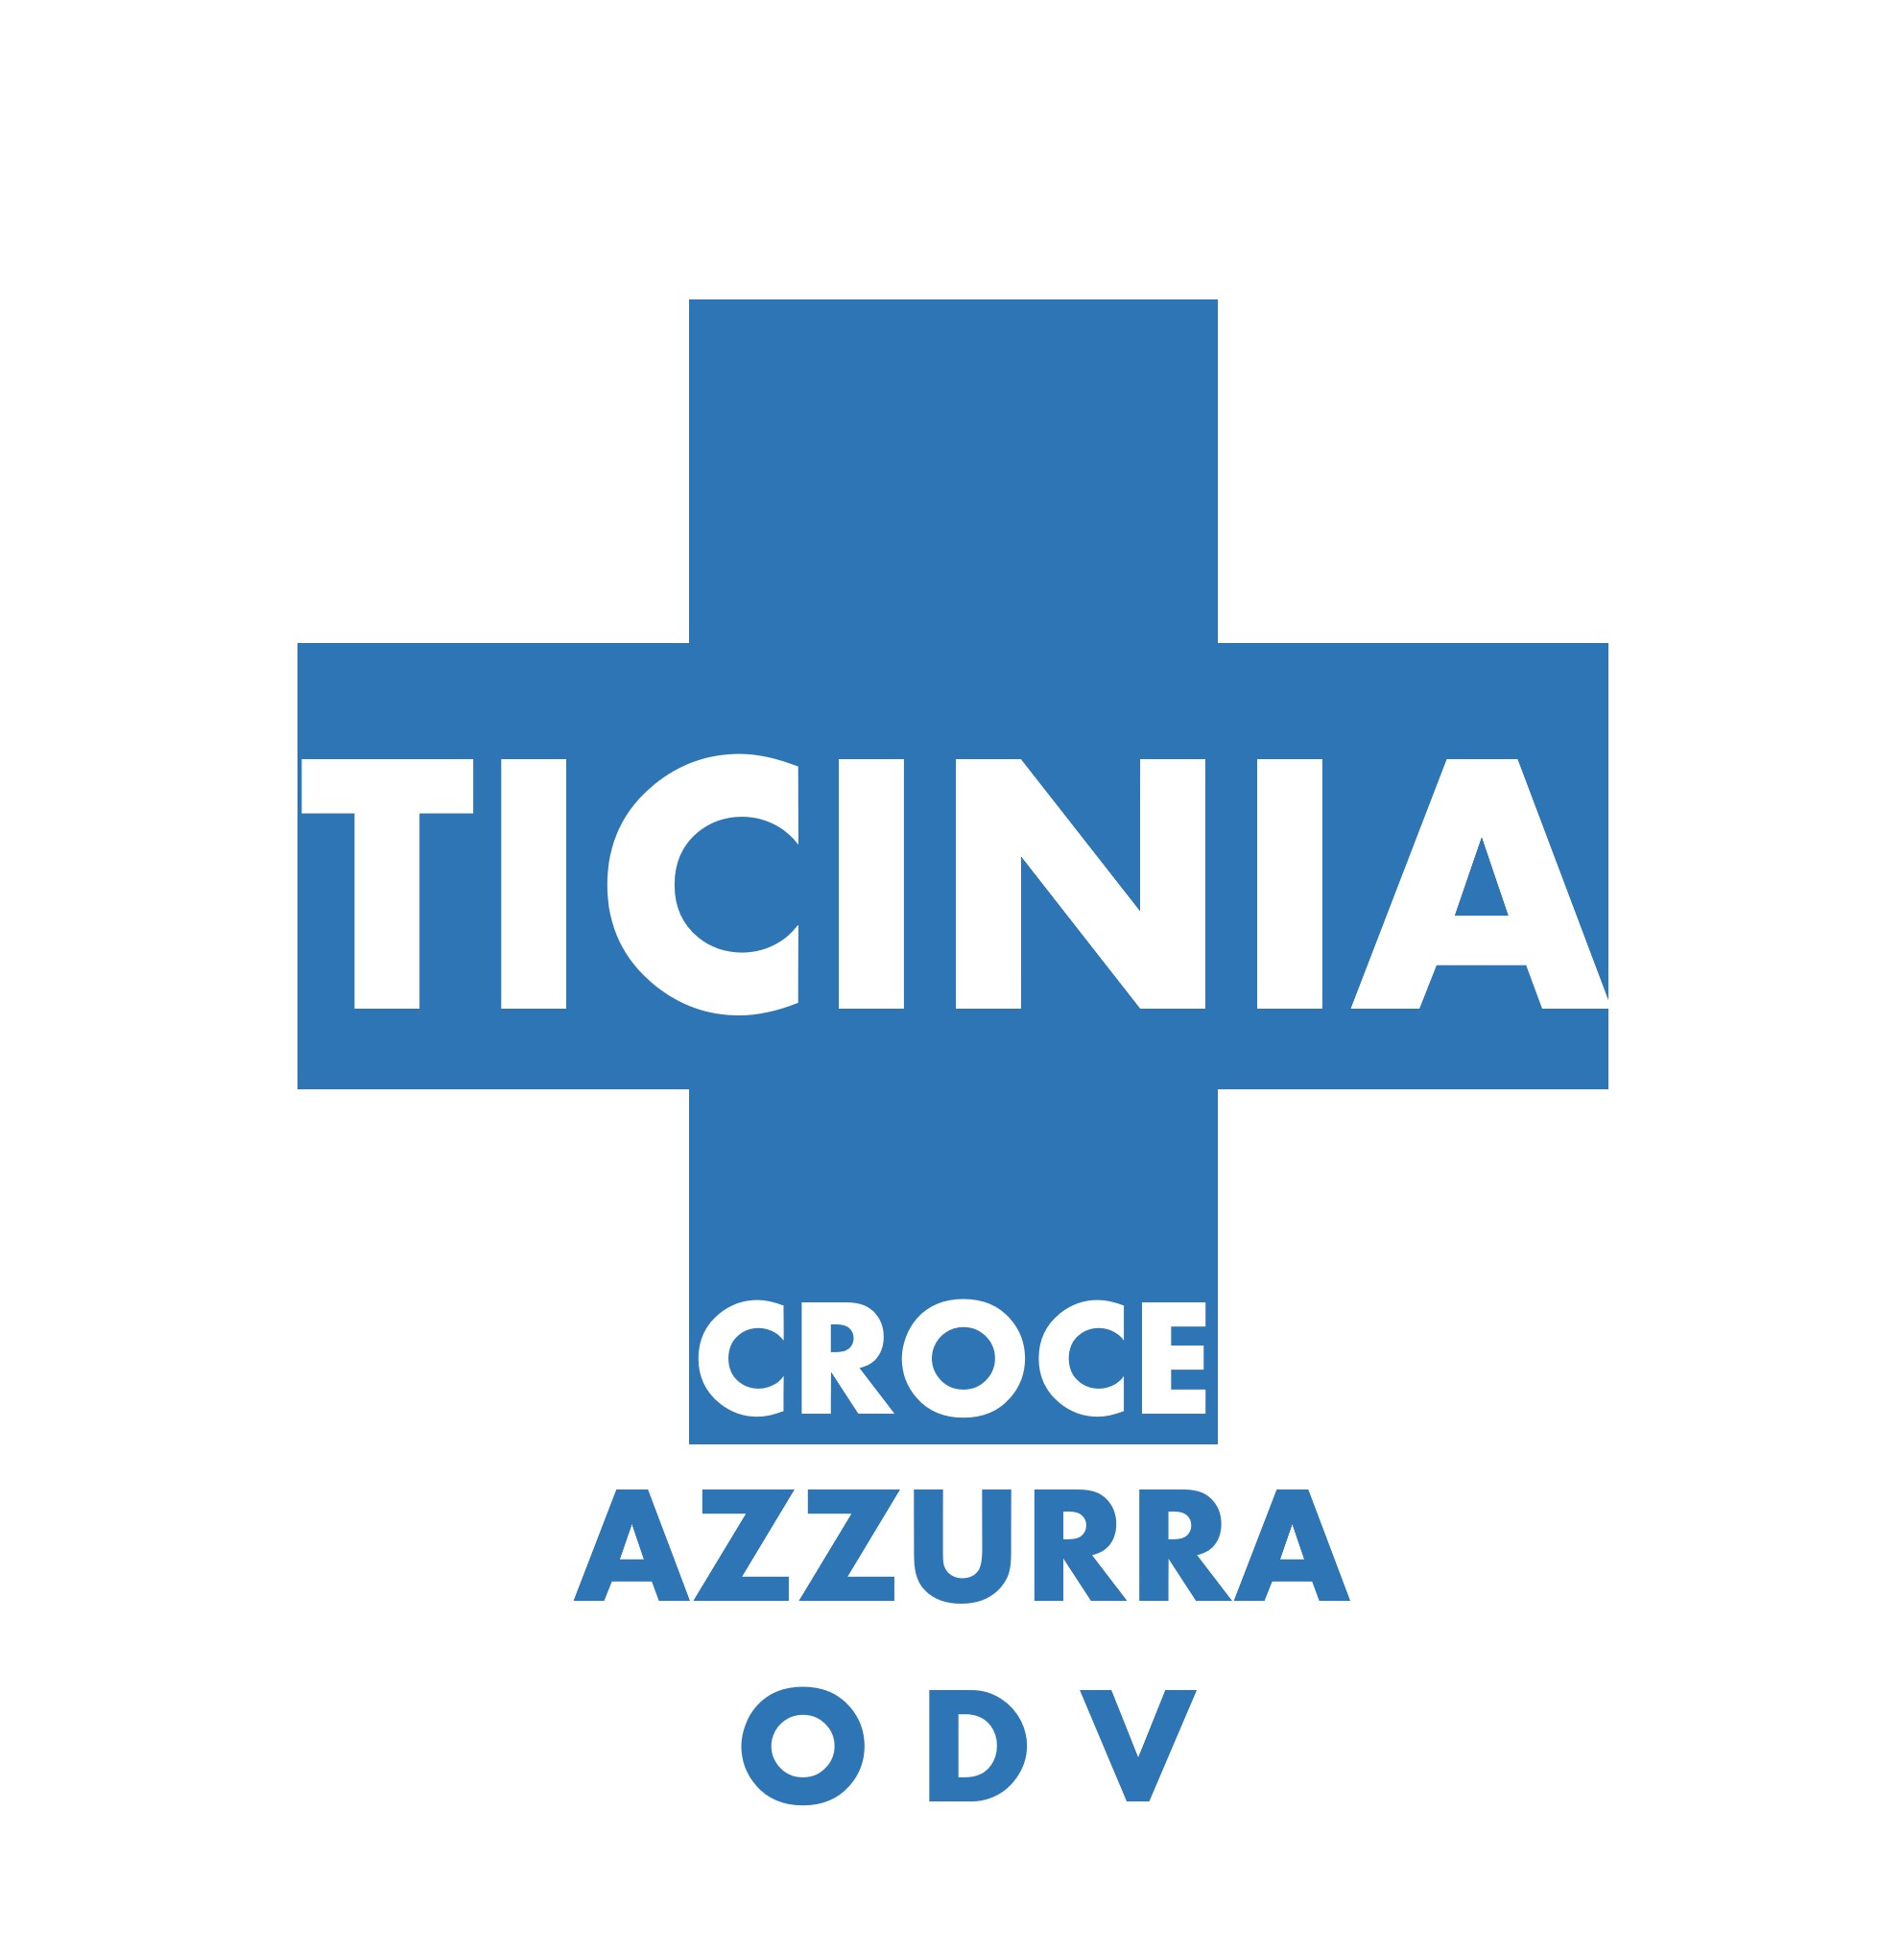 Archivio Storico Croce Azzurra Ticinia - Croce Azzurra Ticinia ODV - 2013 - Iscrizione Registro regionale volontariato